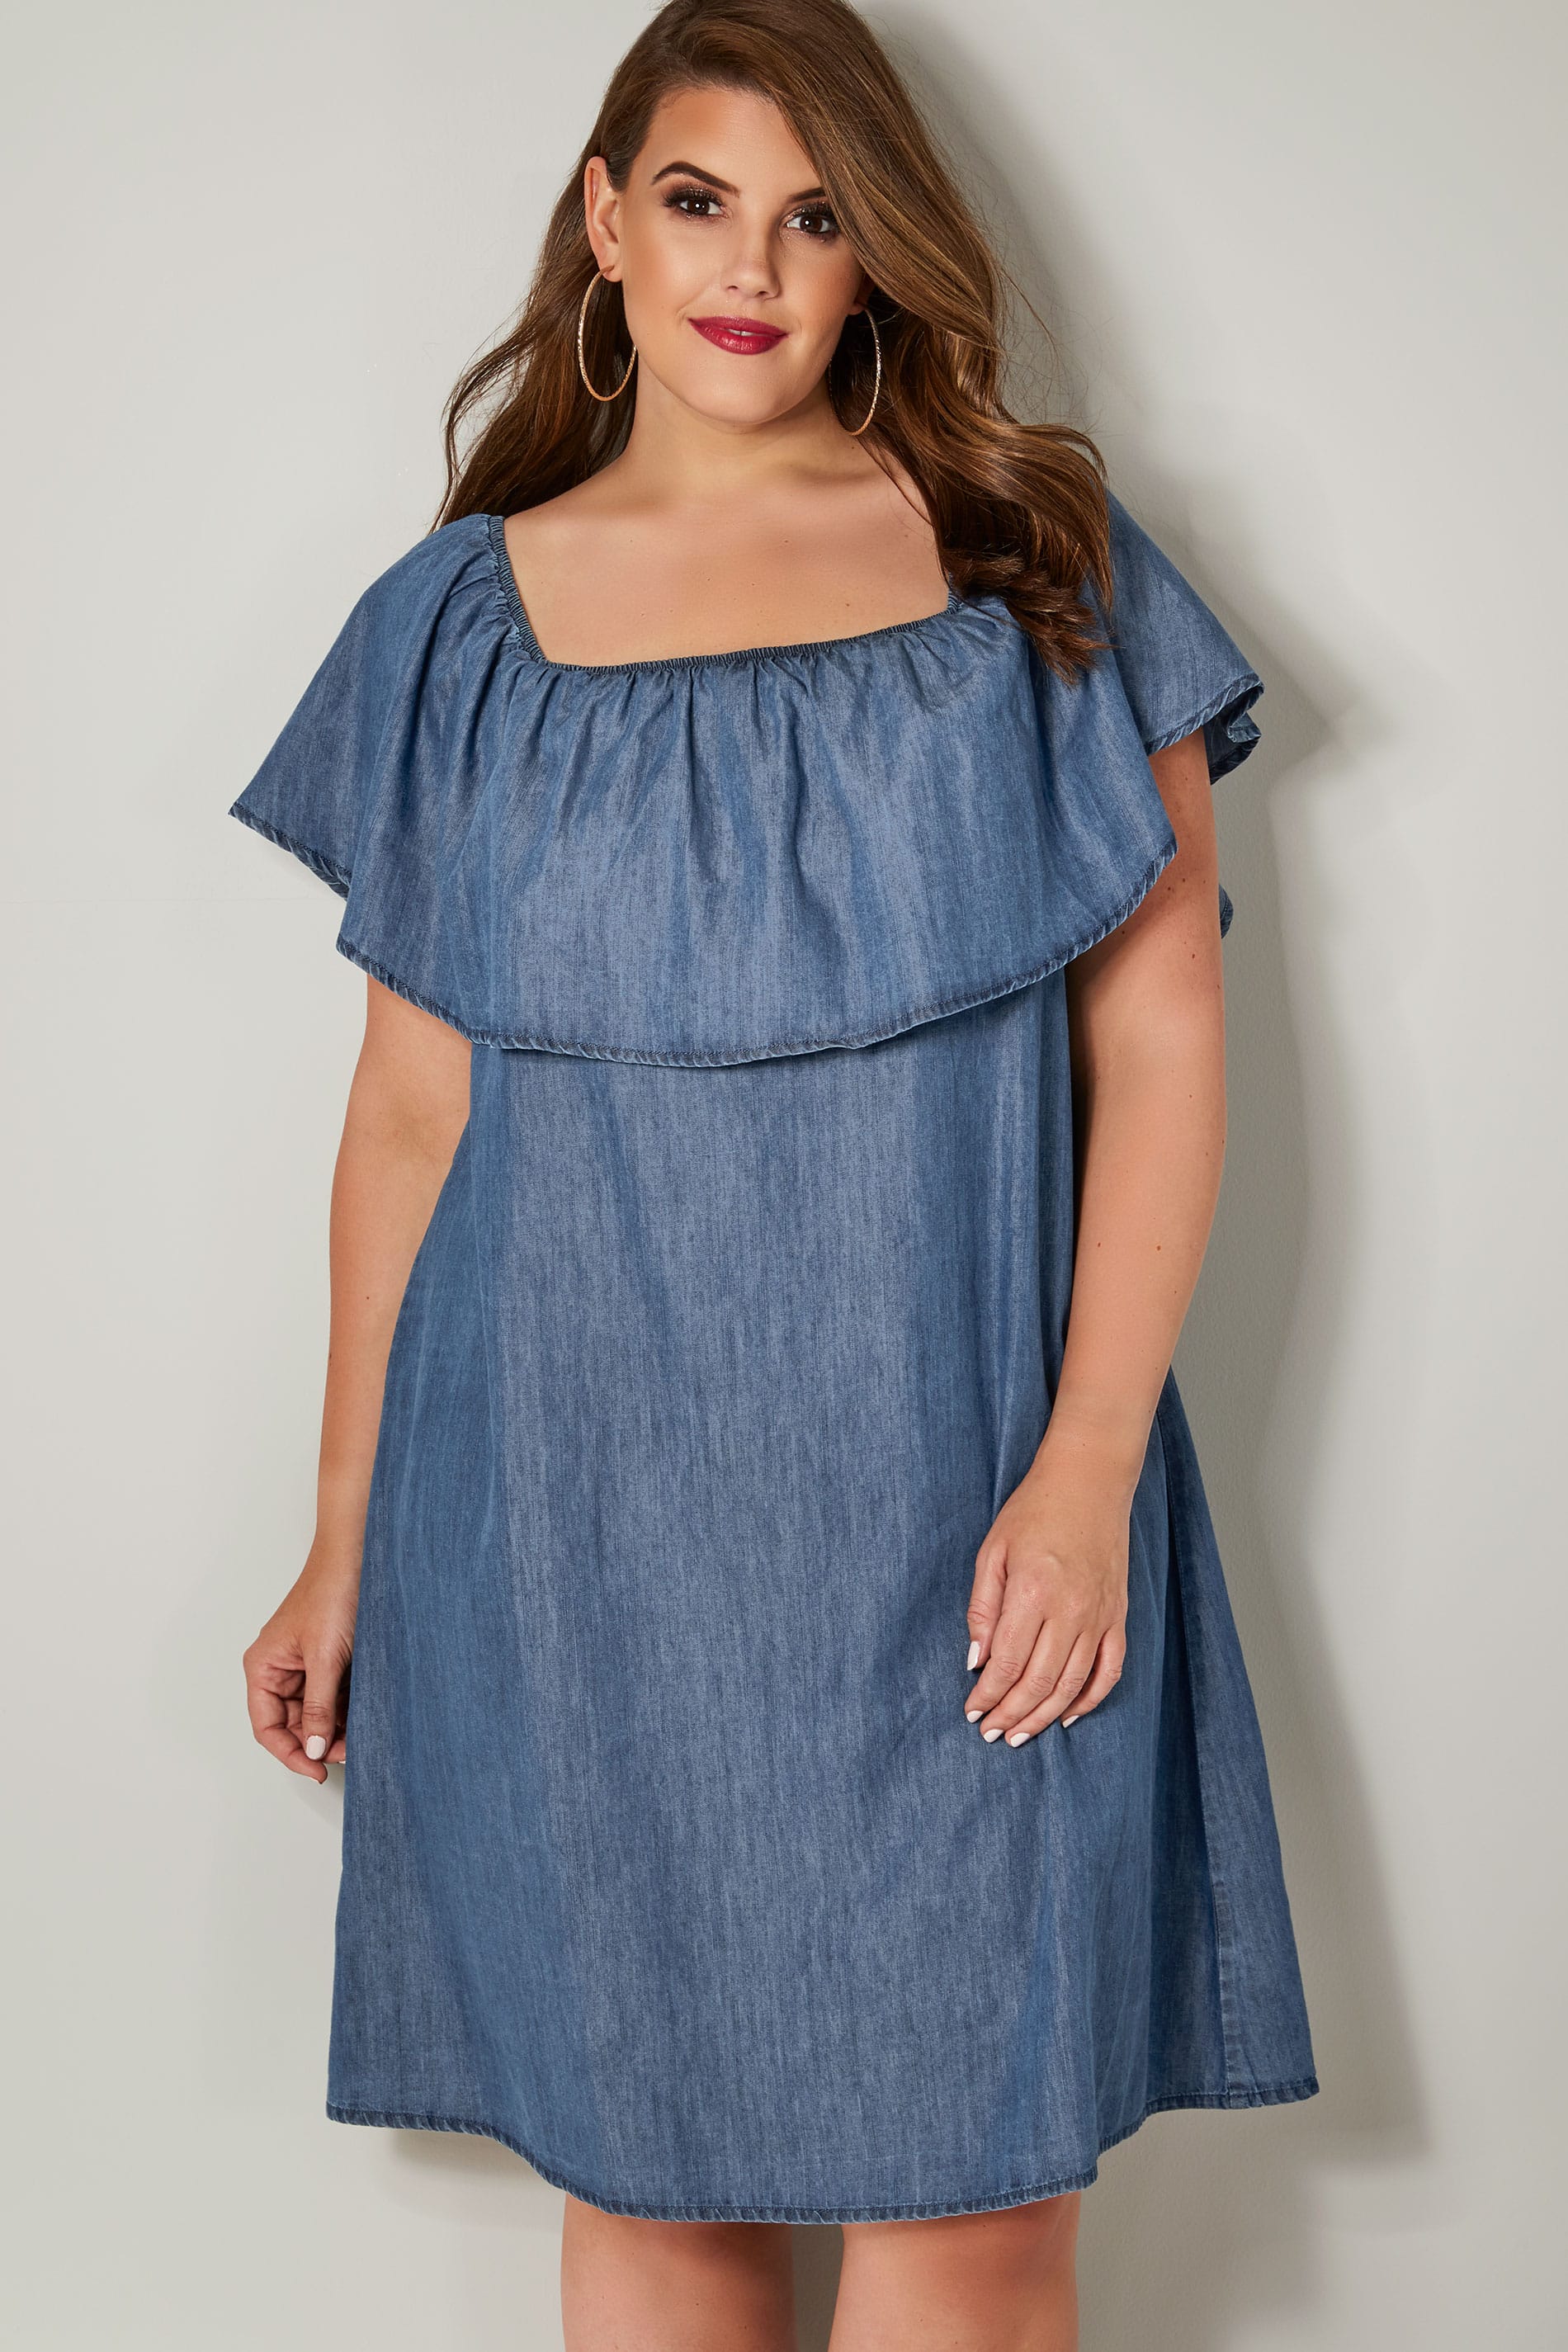 Blue Denim Chambray Bardot Dress, Plus size 16 to 36